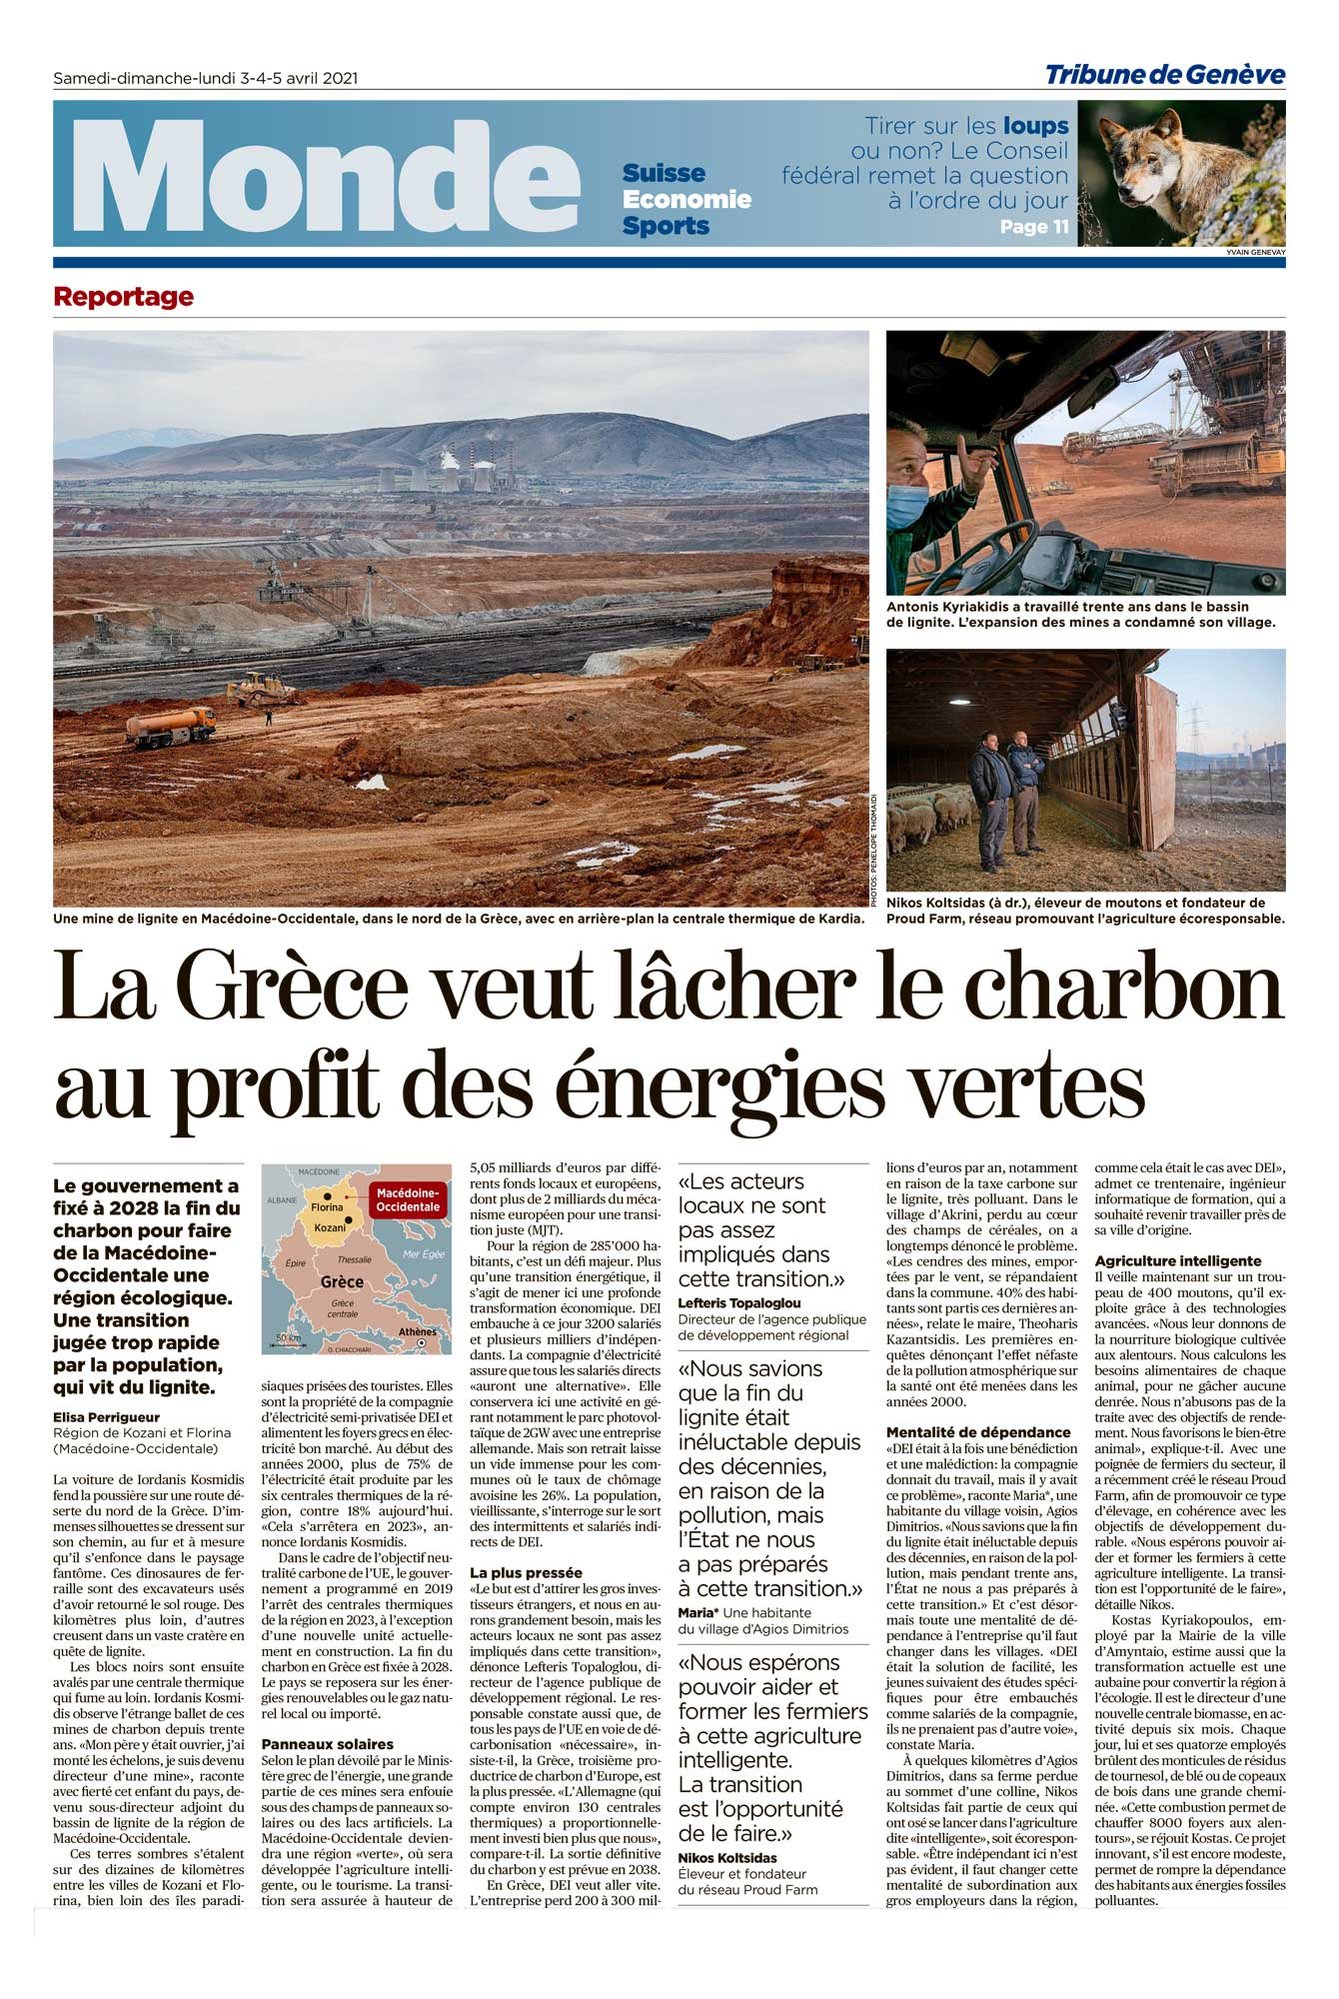 Lignite mining in Greece. Tear-sheet from La Tribune de Genève